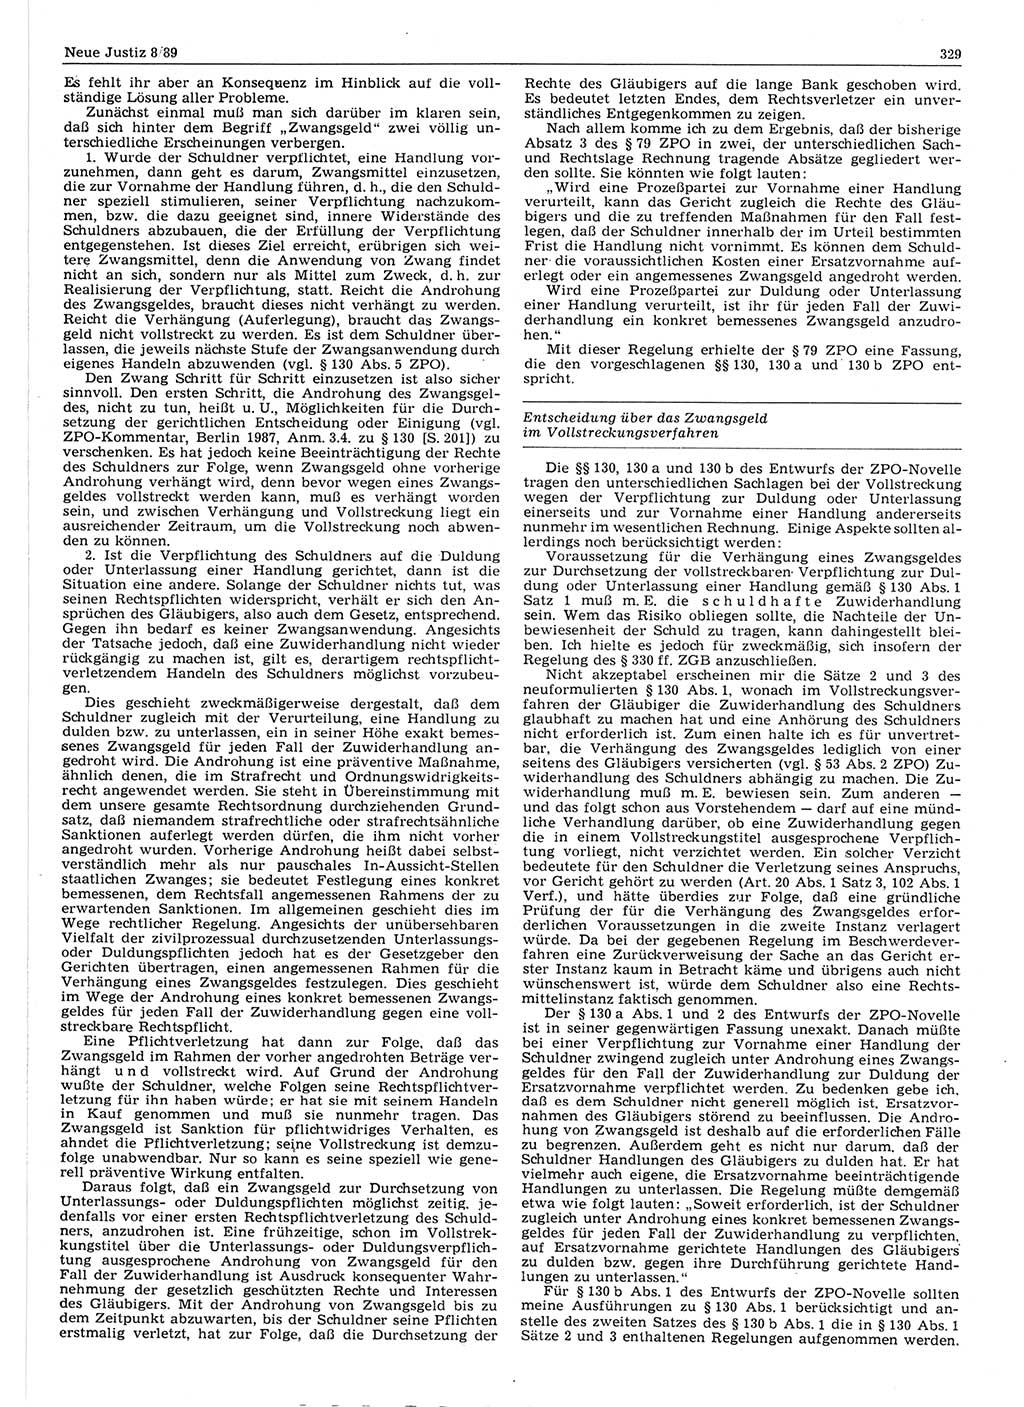 Neue Justiz (NJ), Zeitschrift für sozialistisches Recht und Gesetzlichkeit [Deutsche Demokratische Republik (DDR)], 43. Jahrgang 1989, Seite 329 (NJ DDR 1989, S. 329)